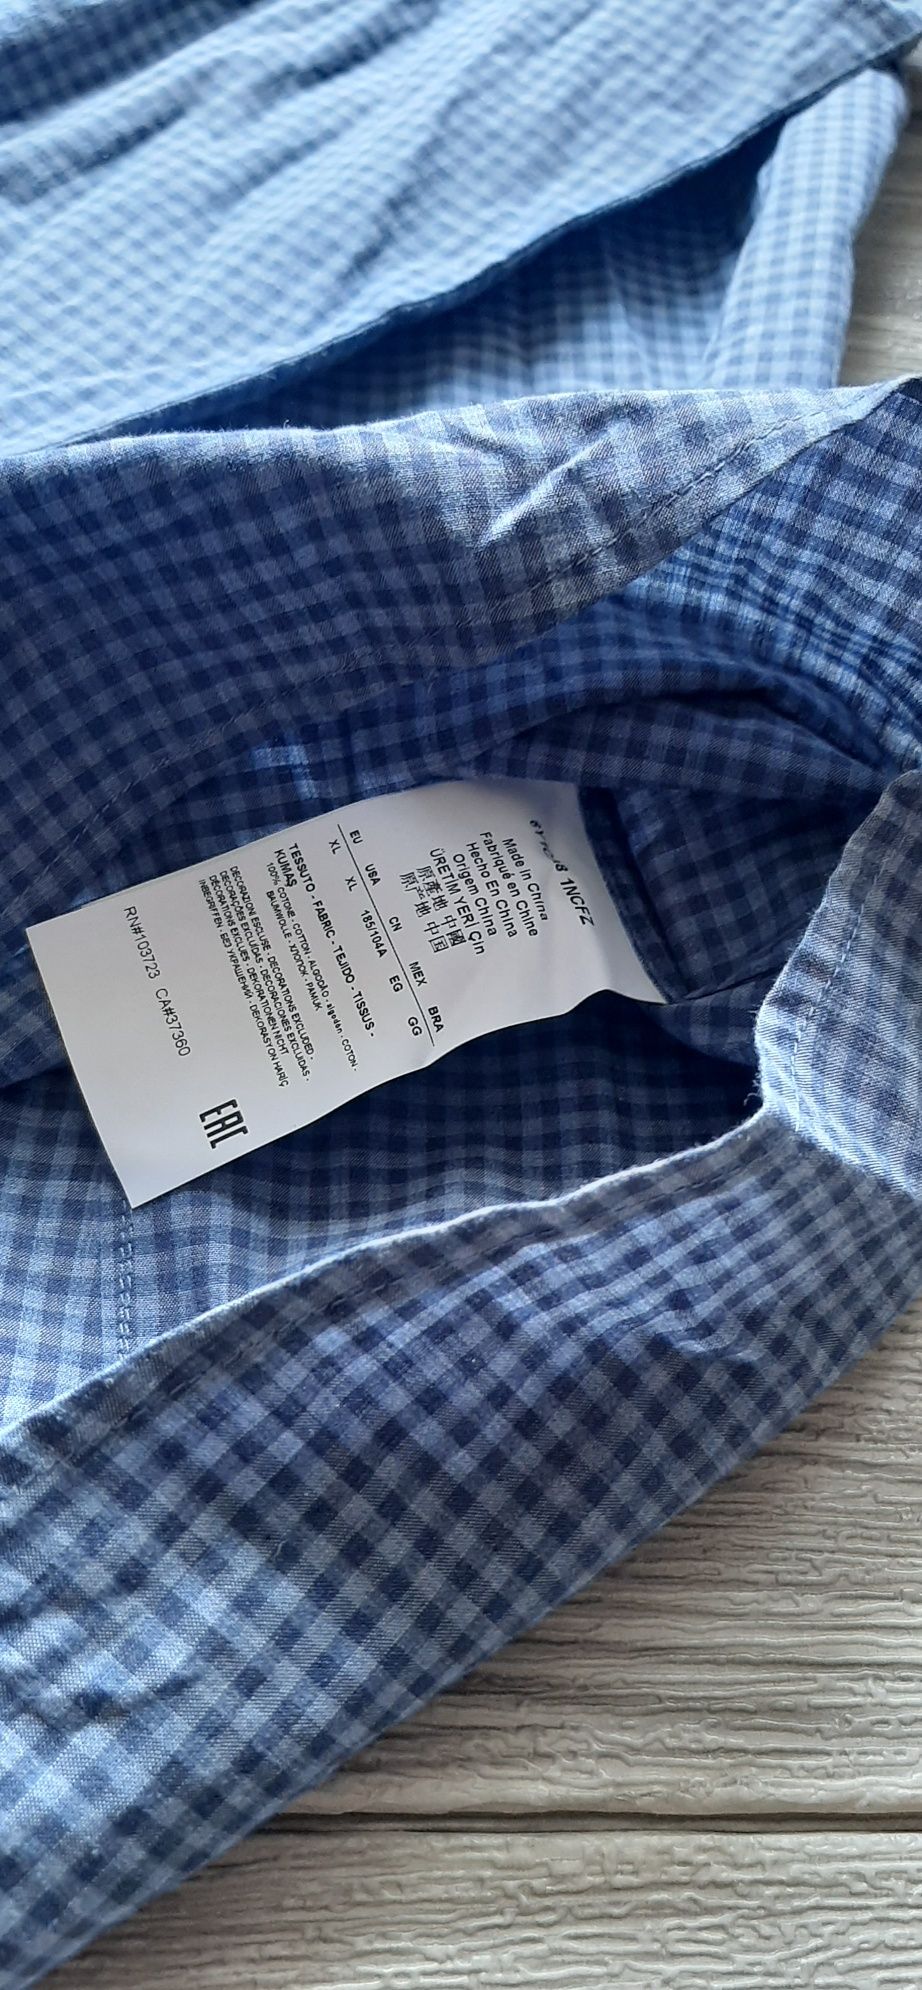 Koszula Emporio Armani męska w kratkę niebieska stylowa biznesowa L XL